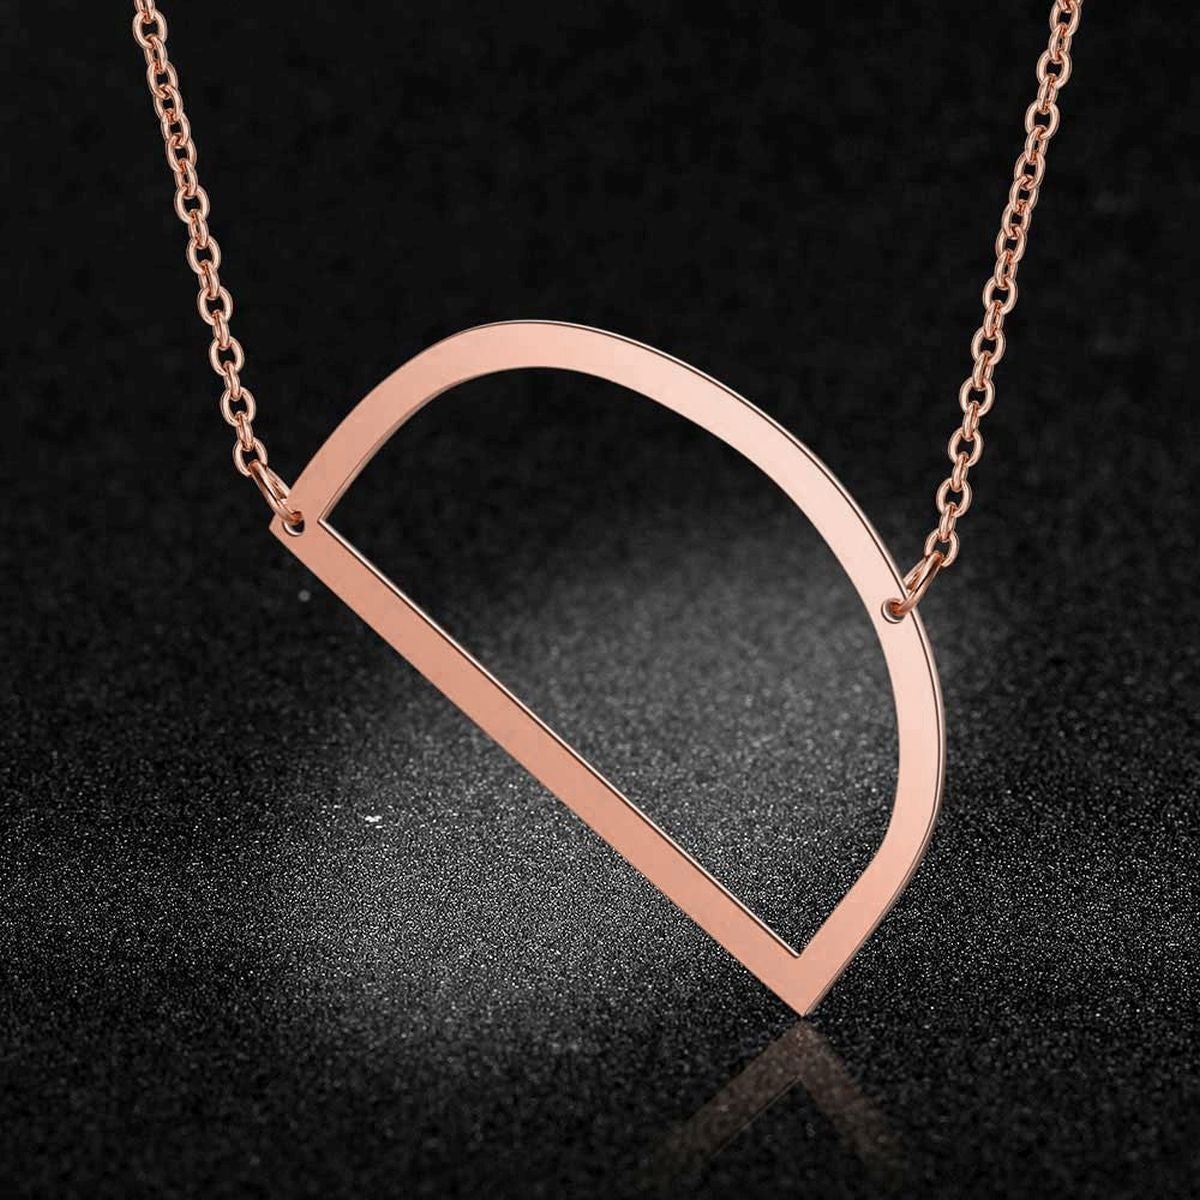 Sideways Open Heart Necklace - Sterling Silver – Marie's Jewelry Store